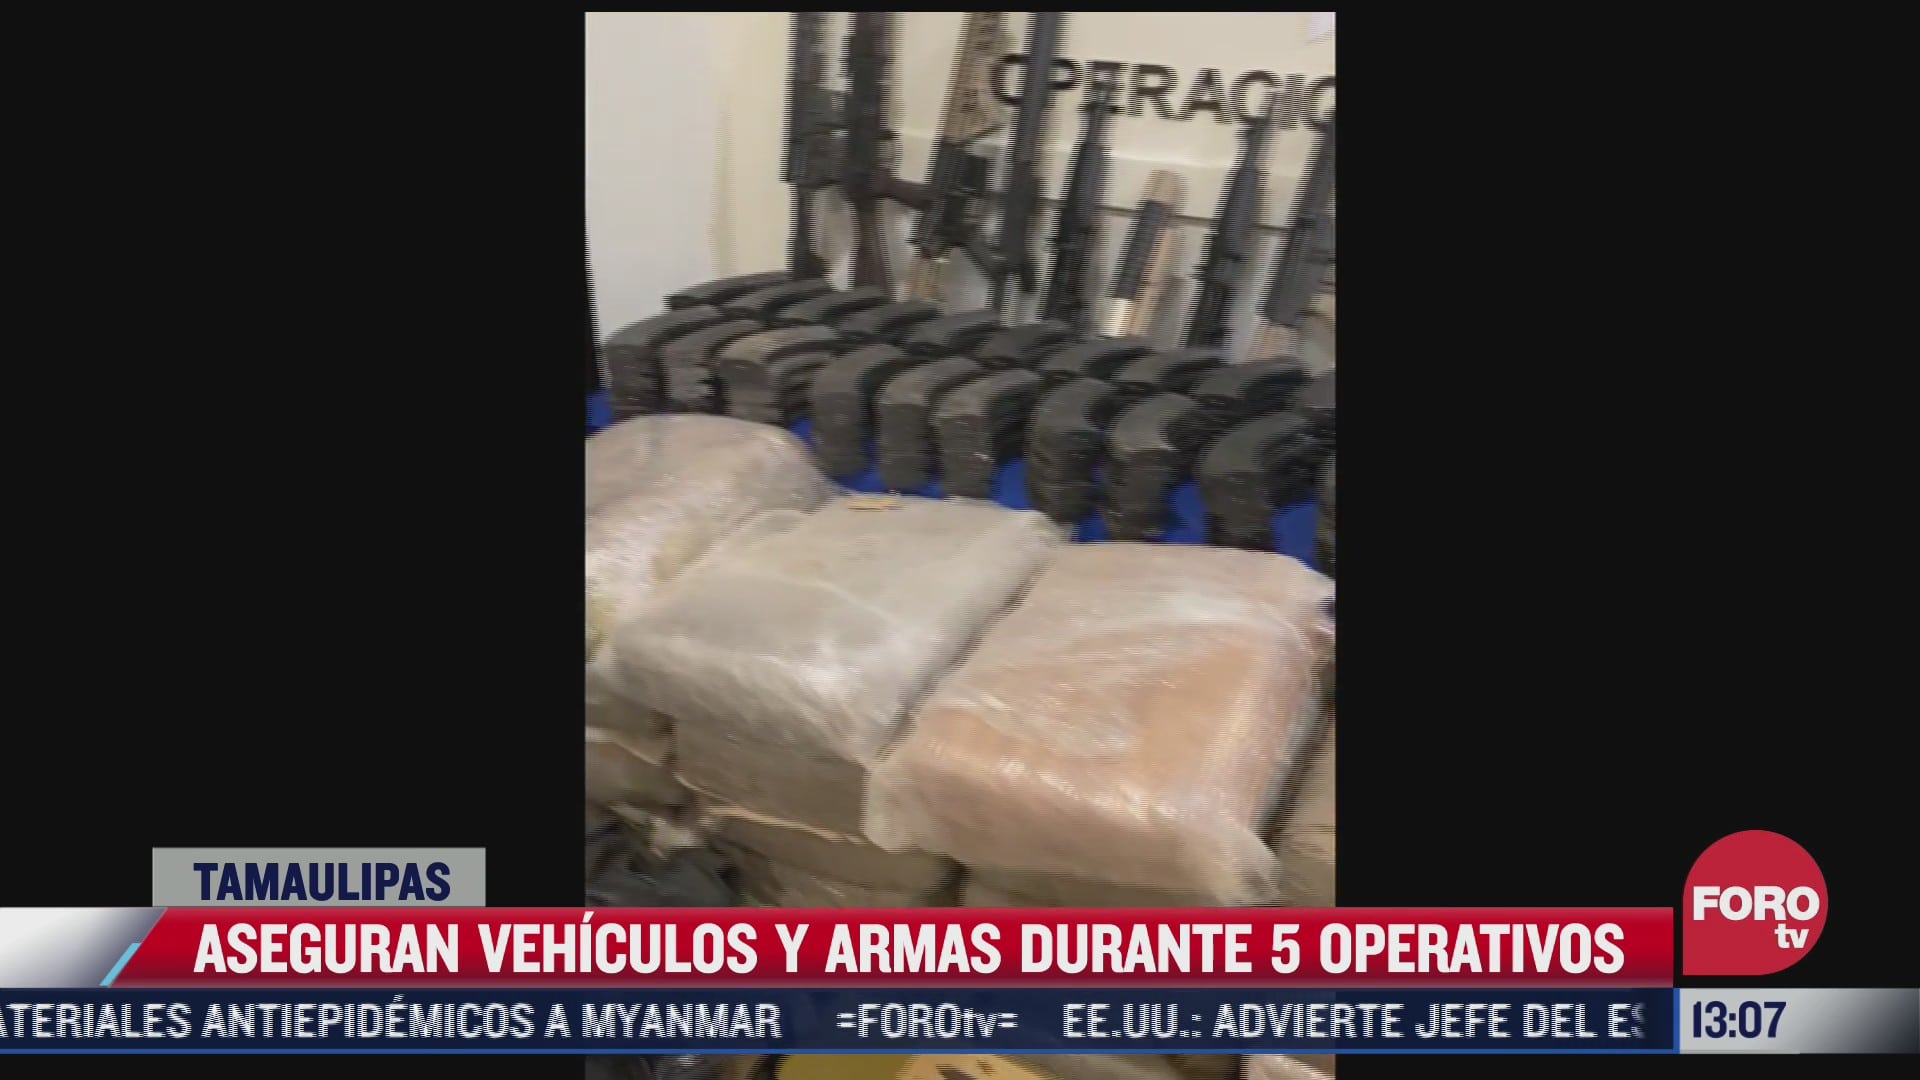 aseguran vehiculos y armas durante 5 operativos en tamaulipas